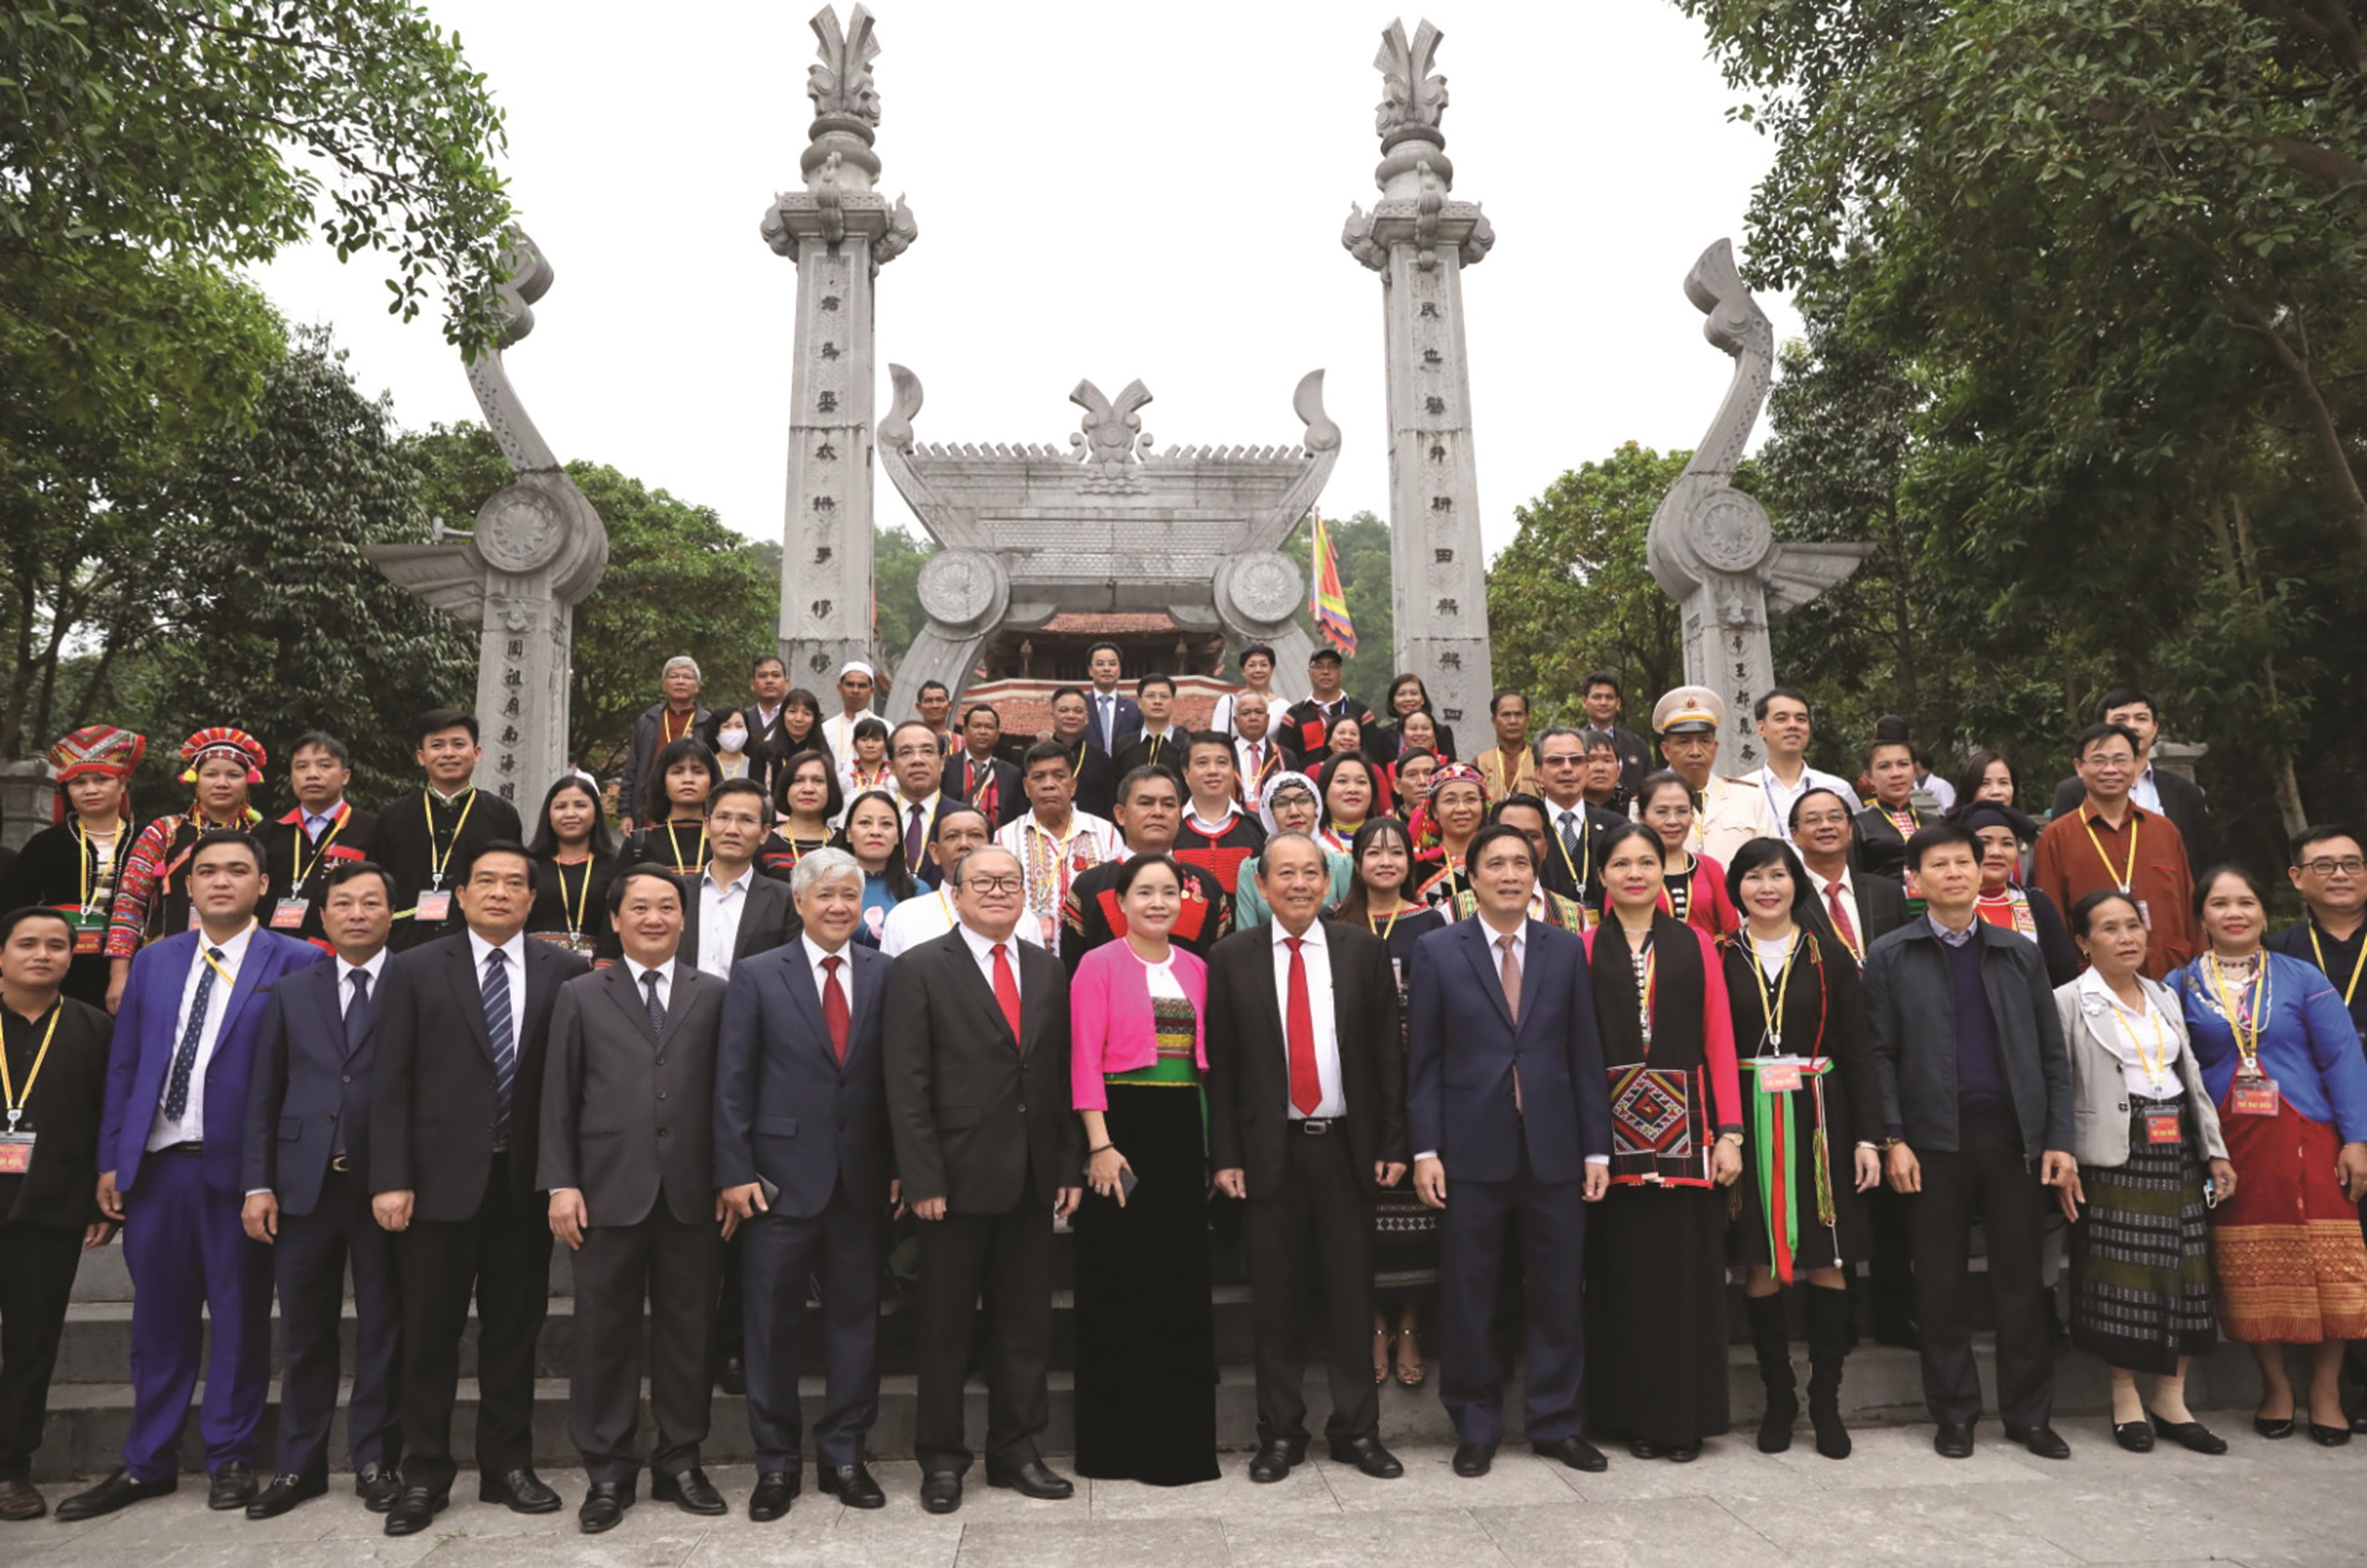 Phó Thủ tướng Thường trực Chính phủ Trương Hòa Bình và các đại biểu dự Đại hội Đại biểu toàn quốc các DTTS Việt Nam lần thứ II năm 2020 chụp ảnh lưu niệm tại đền Hùng.